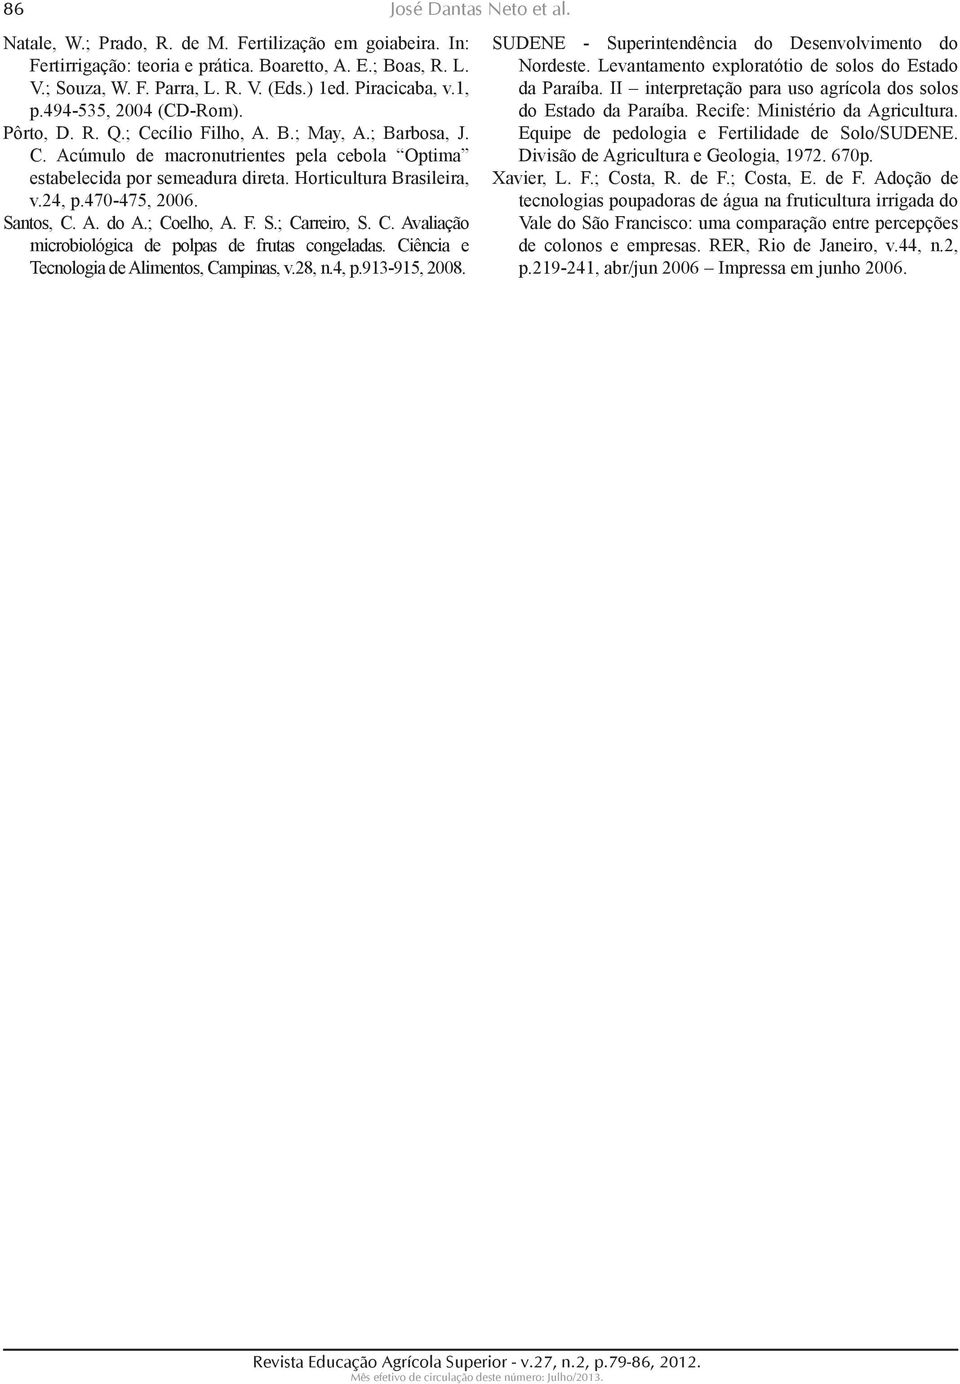 24, p.470-475, 2006. Santos, C. A. do A.; Coelho, A. F. S.; Carrei ro, S. C. Avaliação microbiológica de polpas de fru tas congeladas. Ciência e Tecnologia de Alimentos, Campinas, v.28, n.4, p.913-915, 2008.